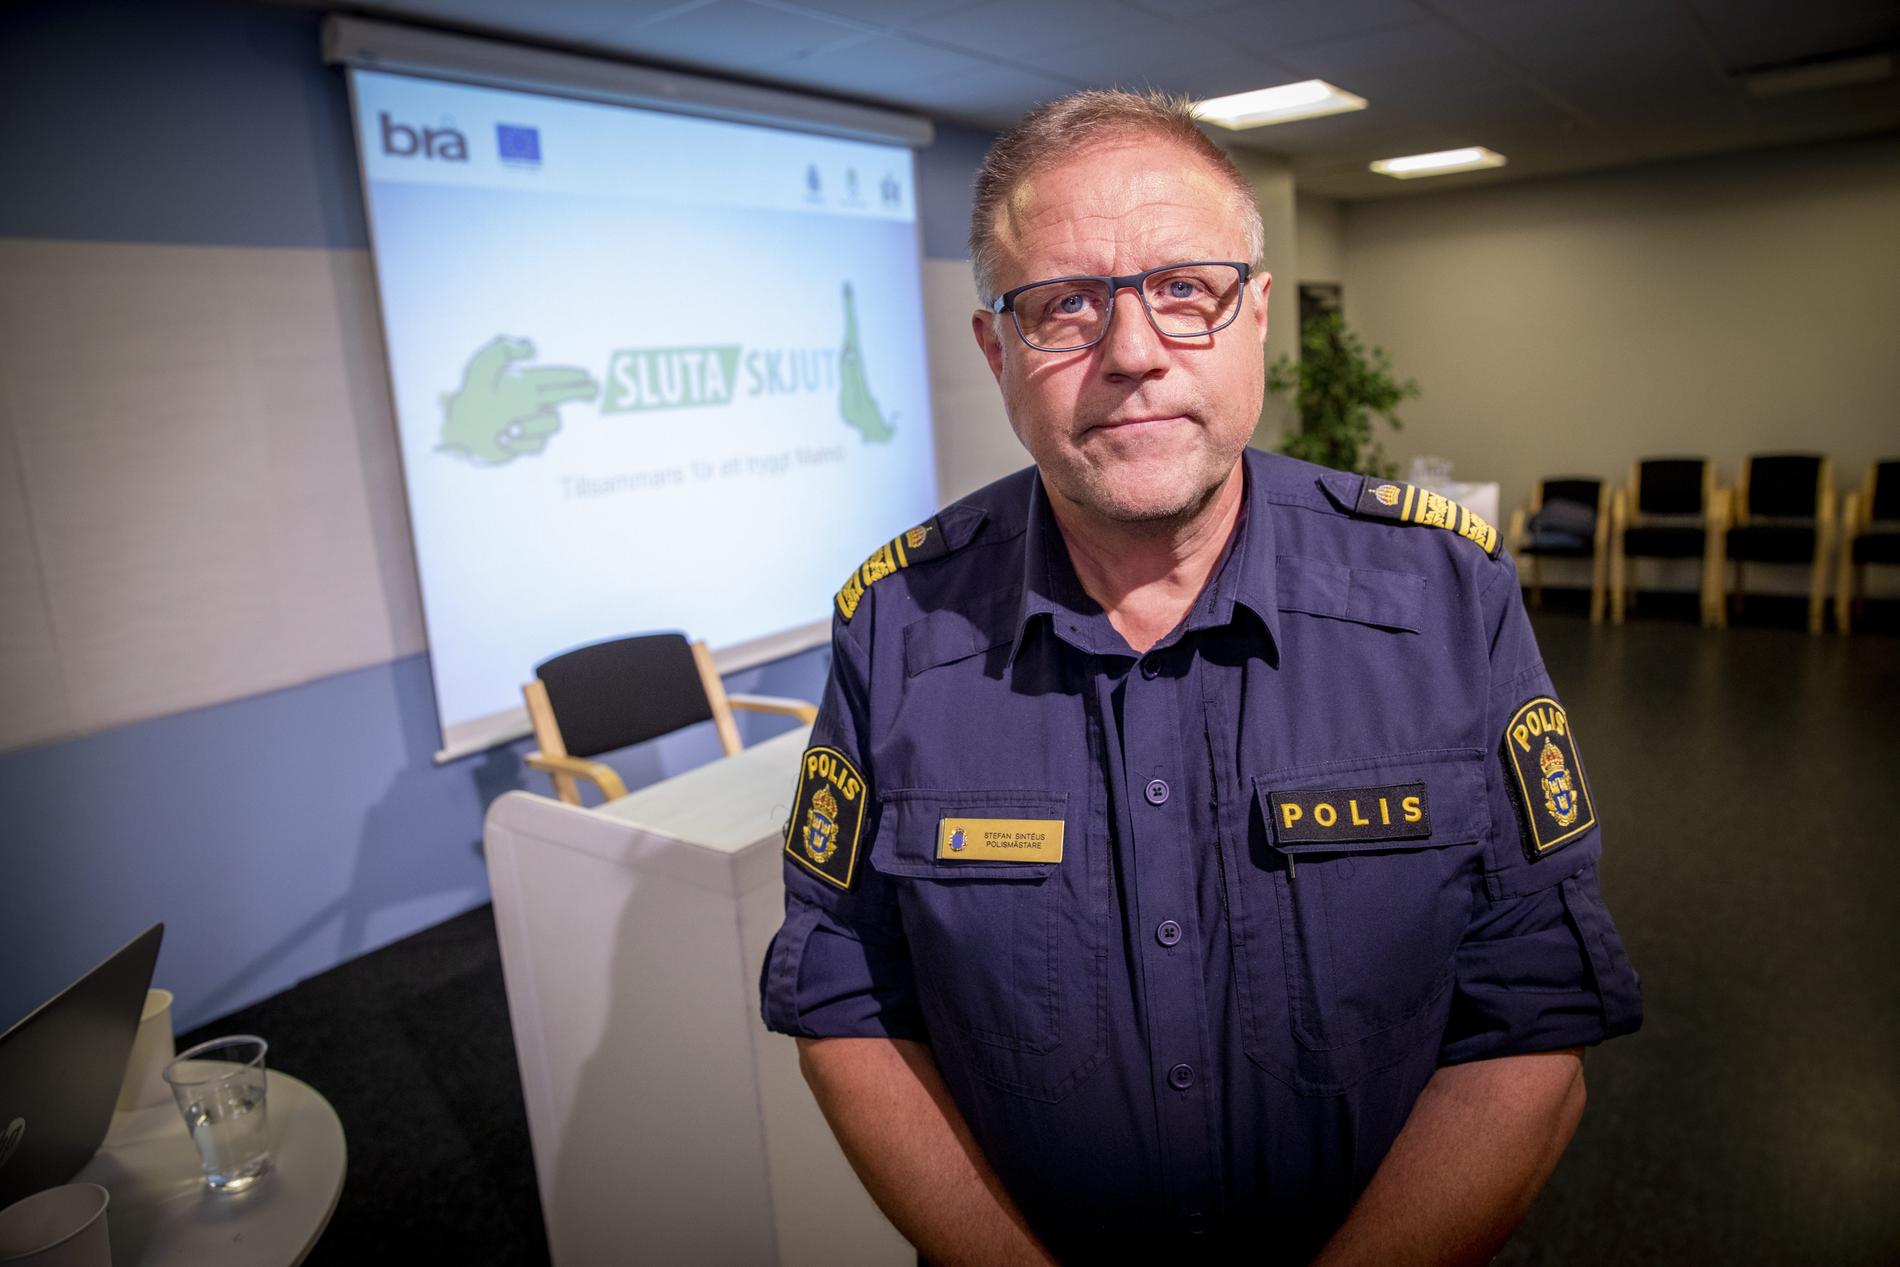 Stefan Sintéus, polisområdeschef i Malmö, under en presskonferens om projektet "Sluta skjut" i Malmö i oktober 2018.